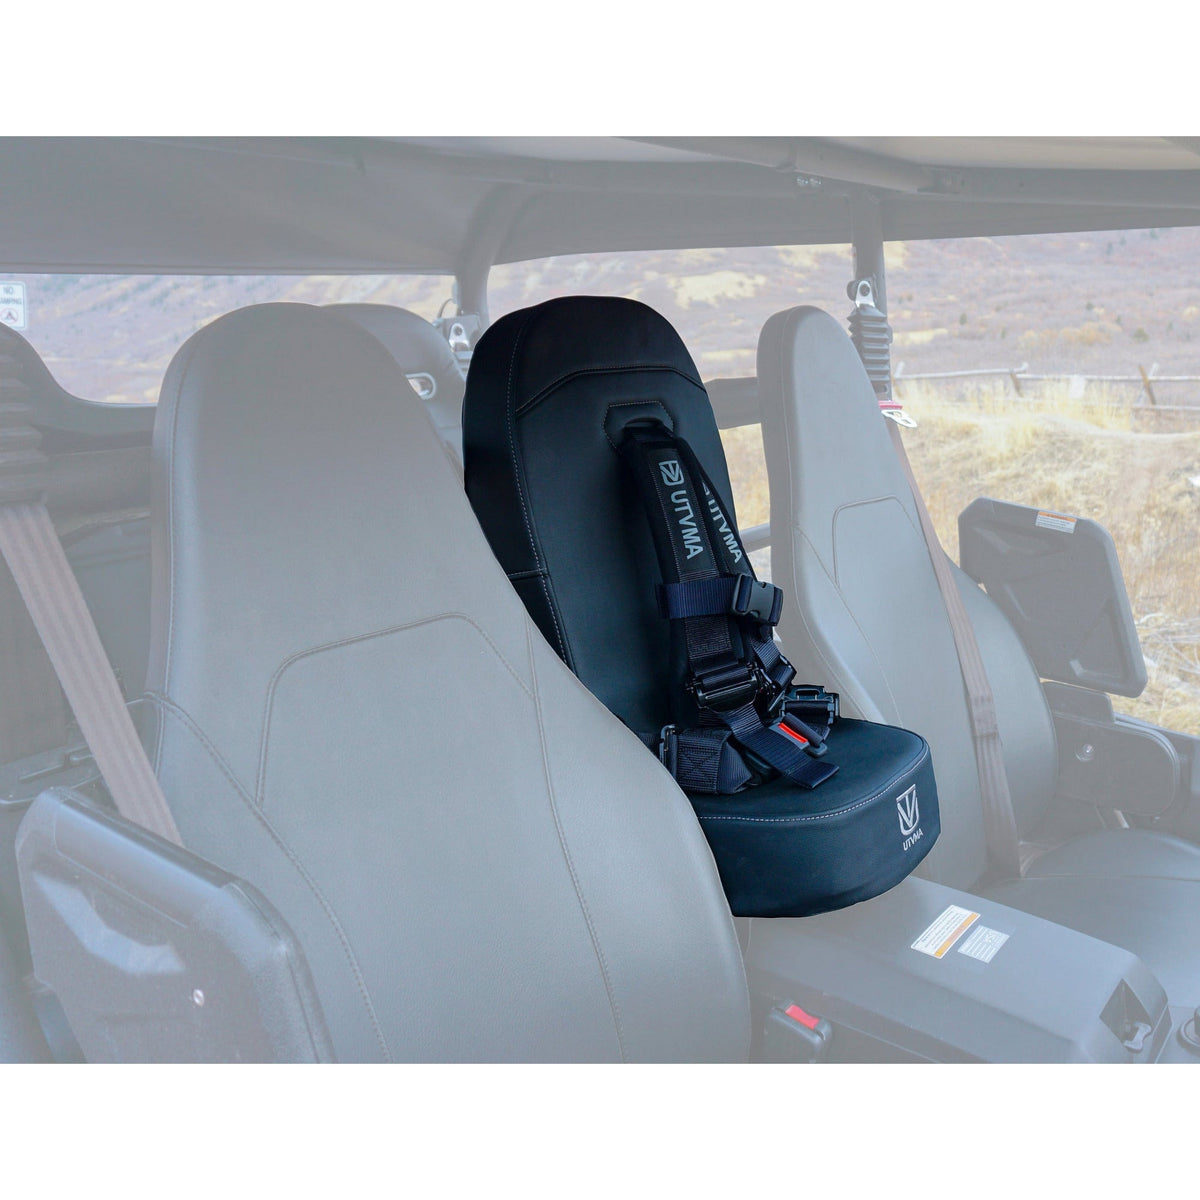 Yamaha Wolverine RMAX Bump Seat with Harness